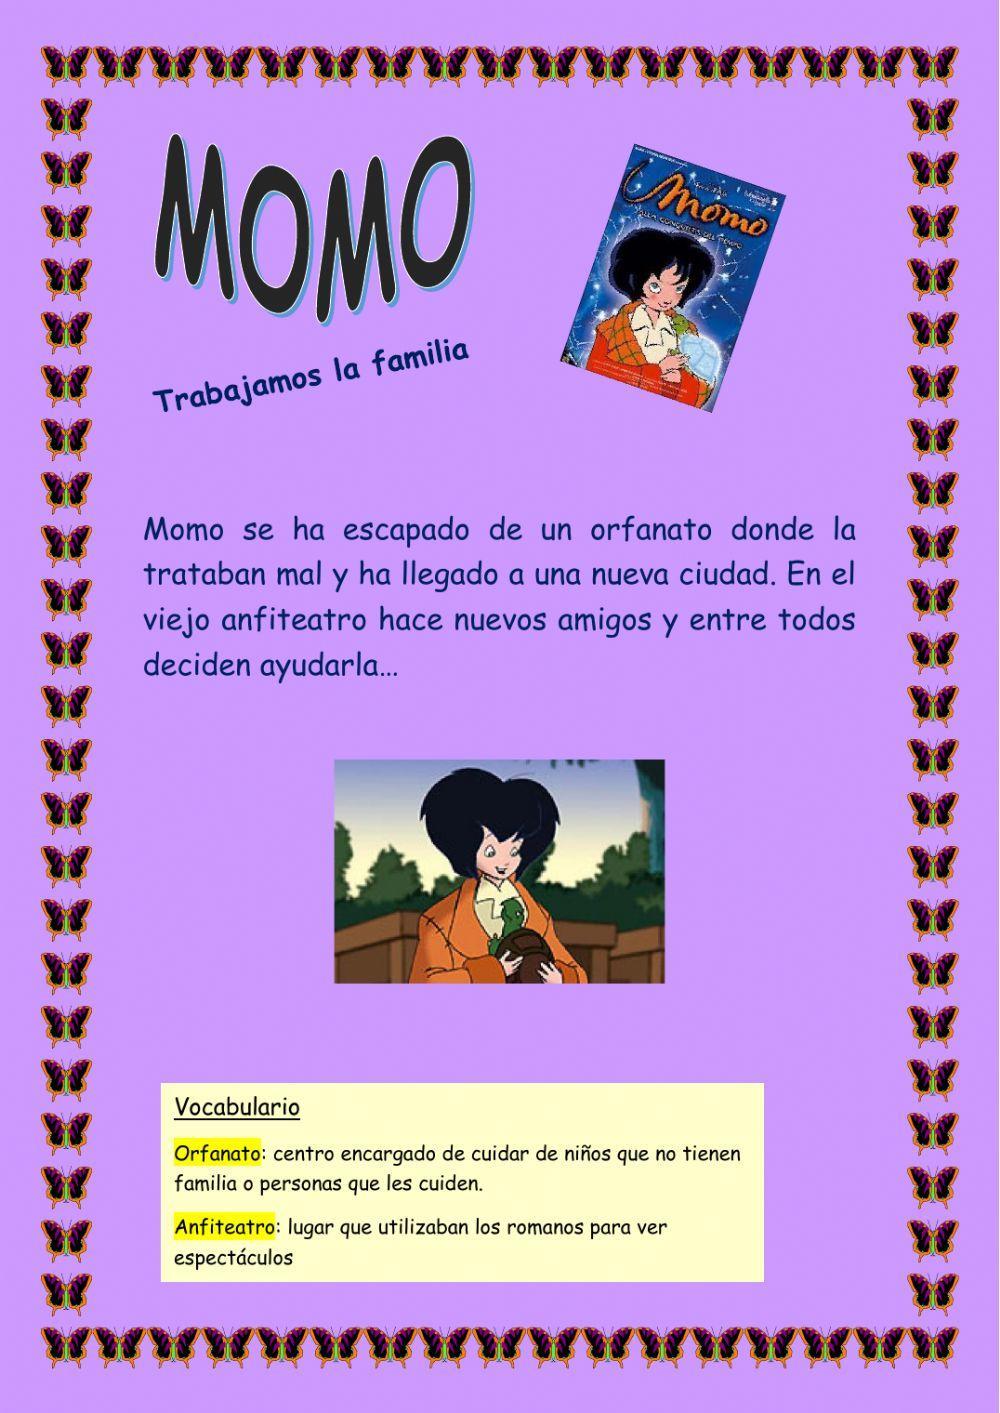 Momo-familia